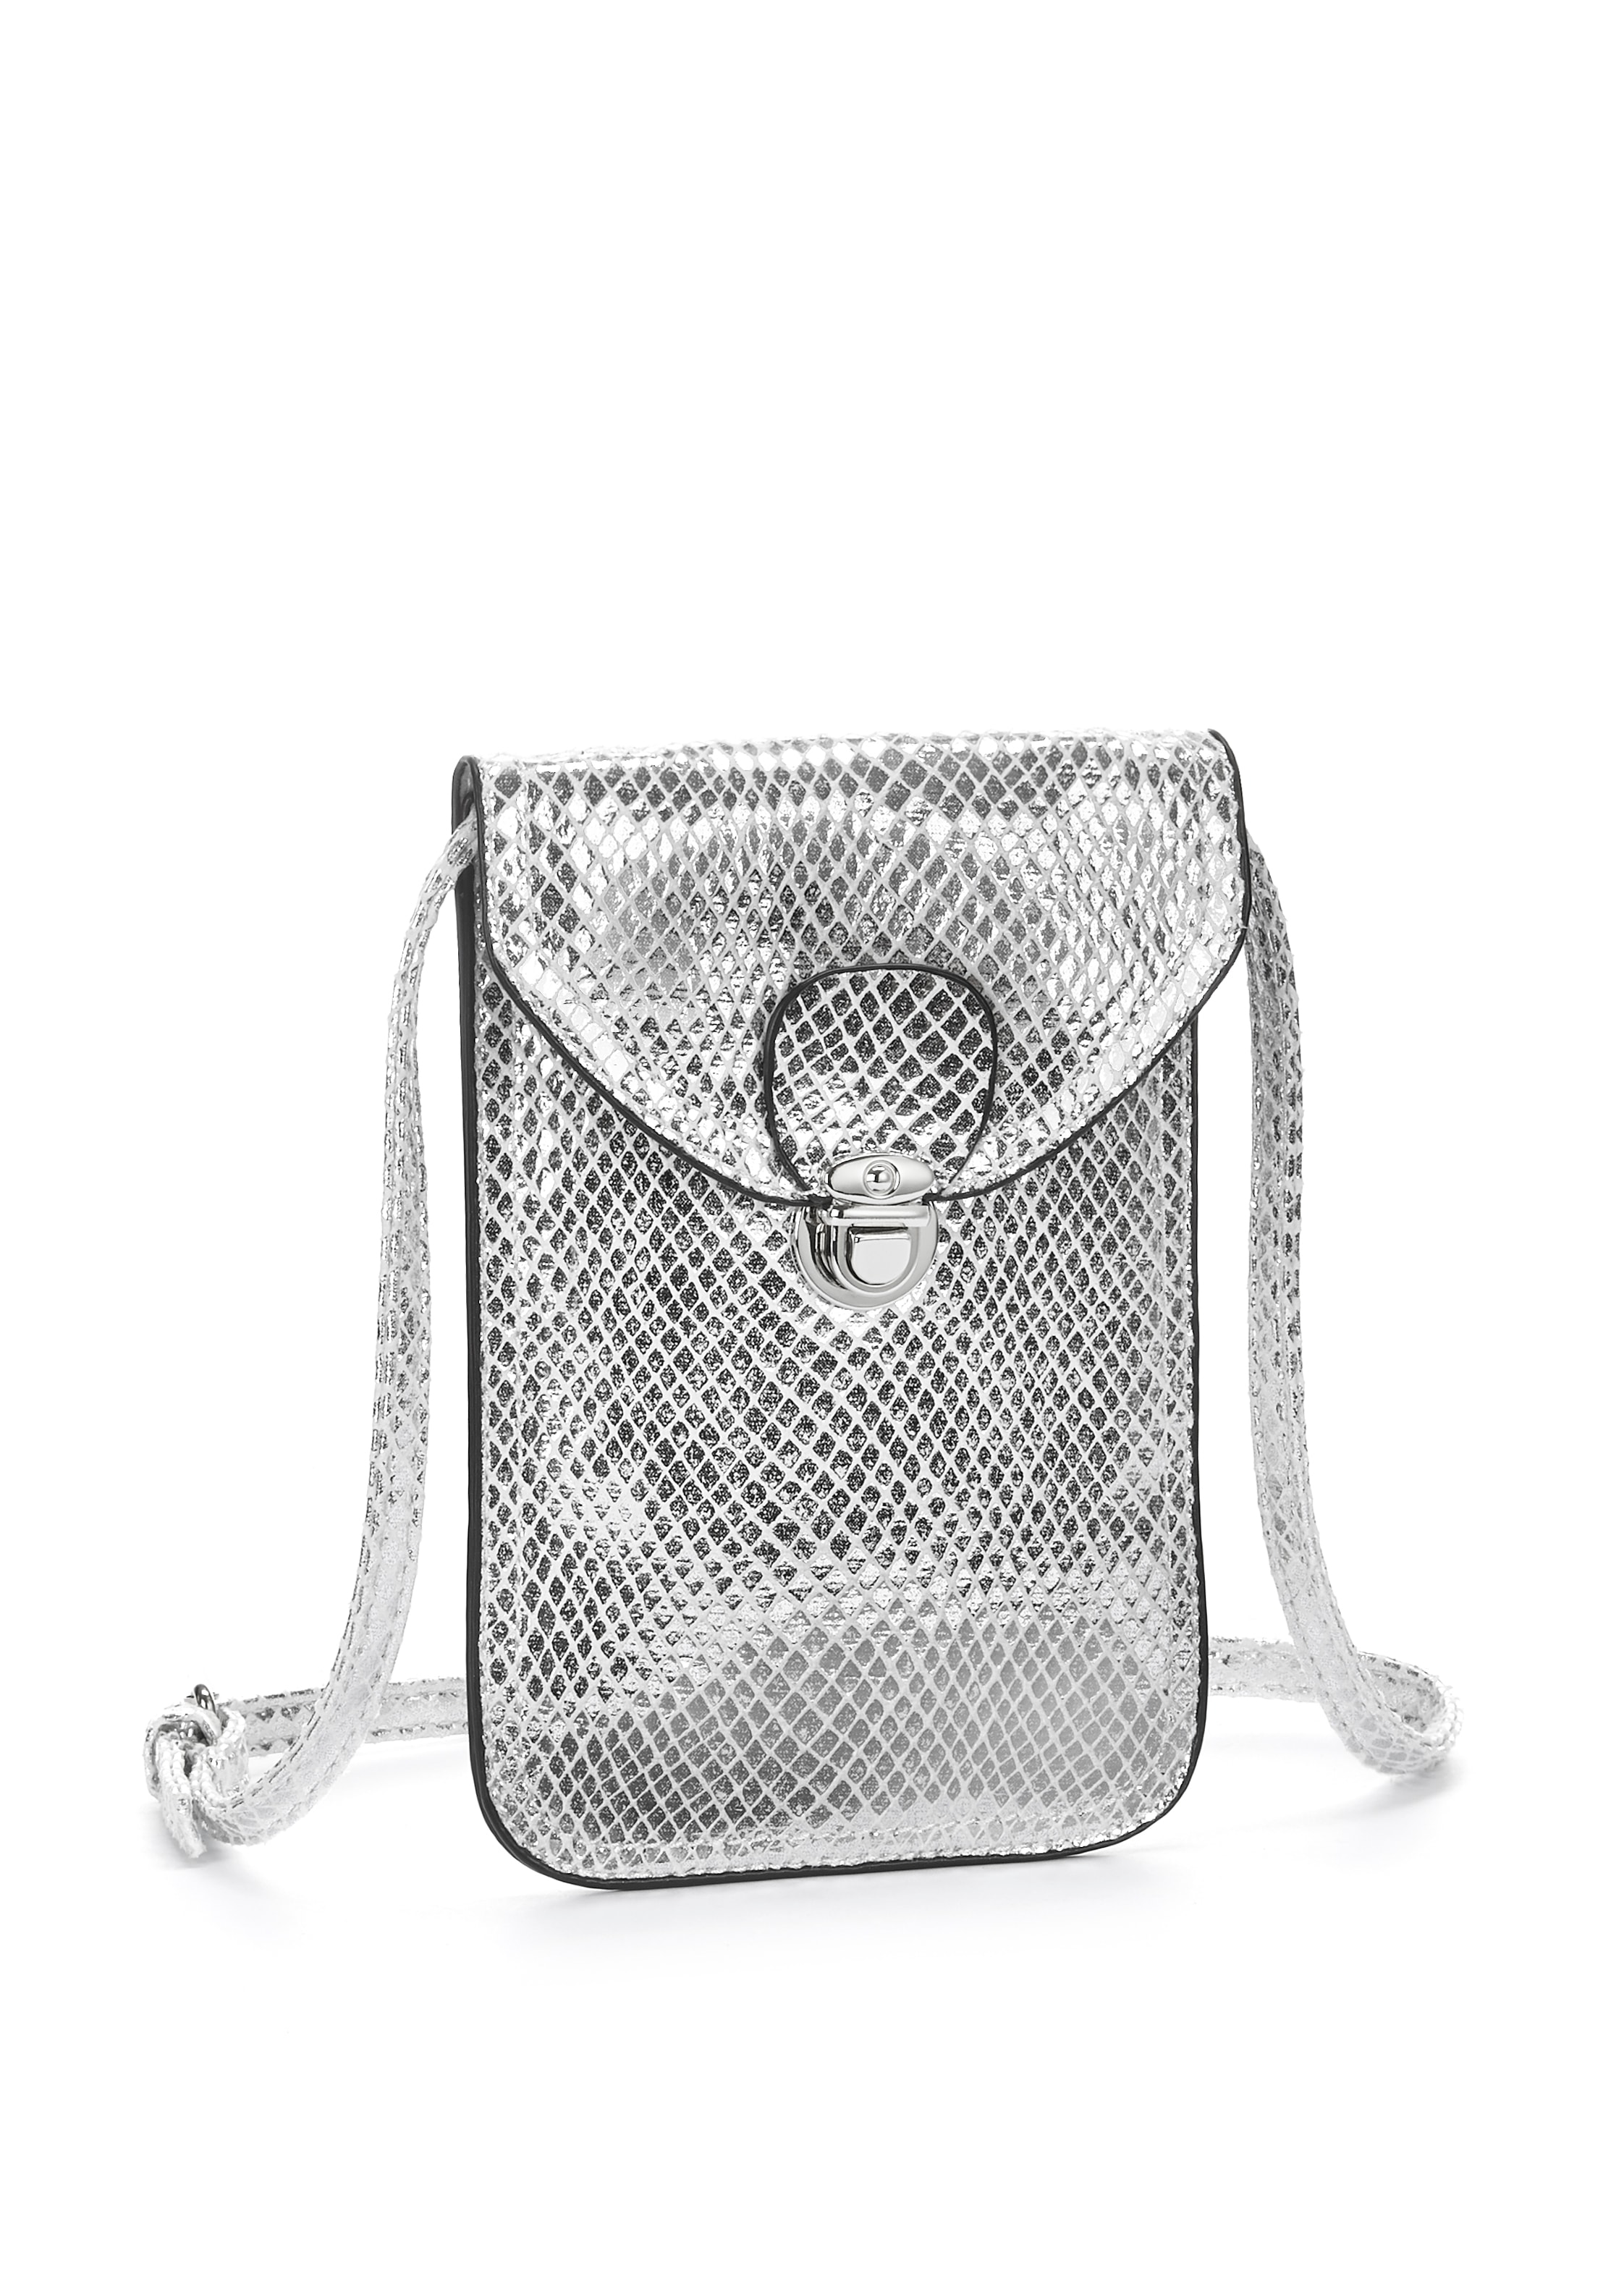 Image of LASCANA Umhängetasche, Minibag, Handytasche zum Umhängen im coolen Metallic Look